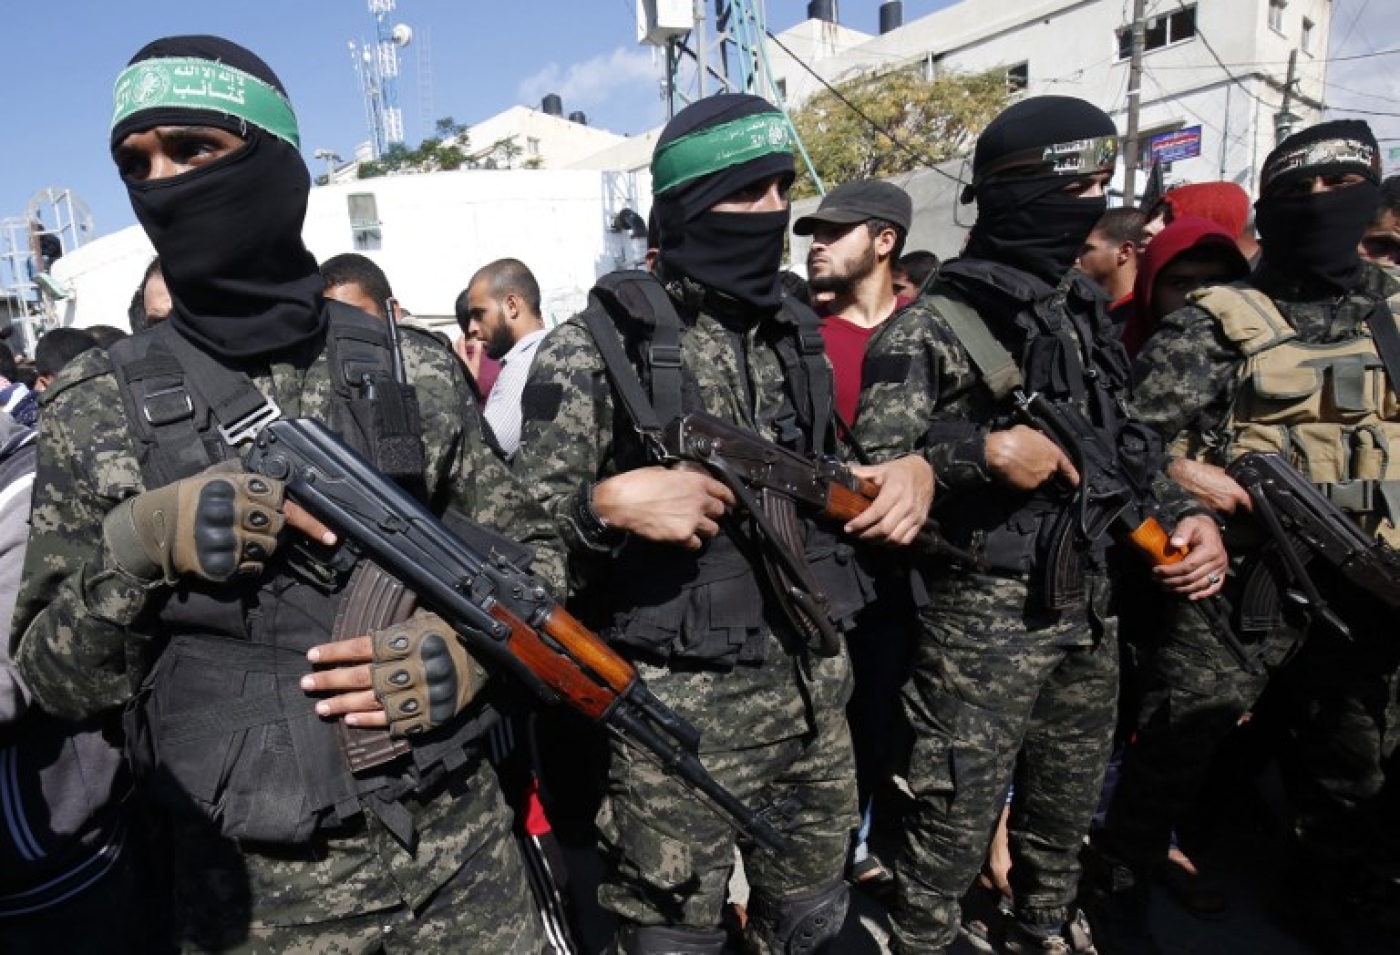 hamas-says-botched-israeli-gaza-raid-aimed-to-bug-communications